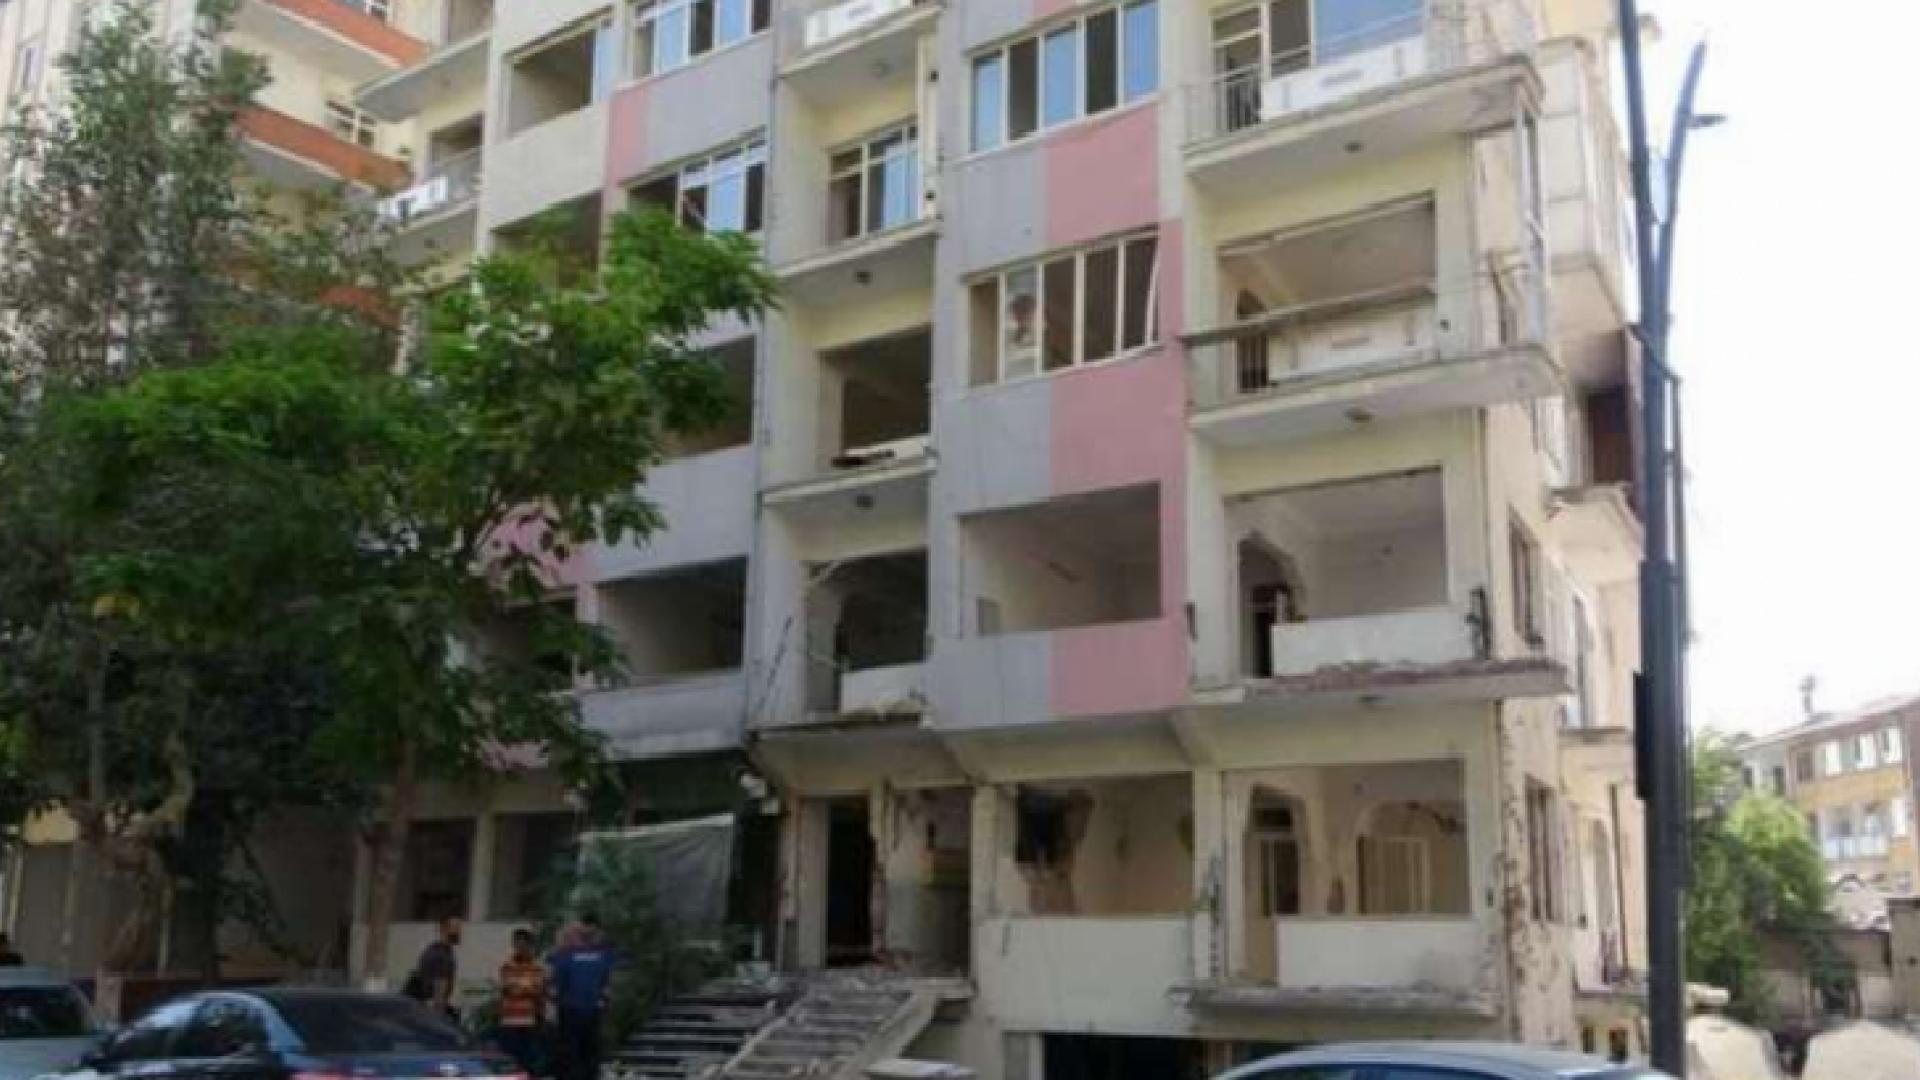 Malatya’da iş cinayeti: Asansörü sökmeye çalışan Ahmet Abinikli 4. kattan düşererk yaşamını kaybetti